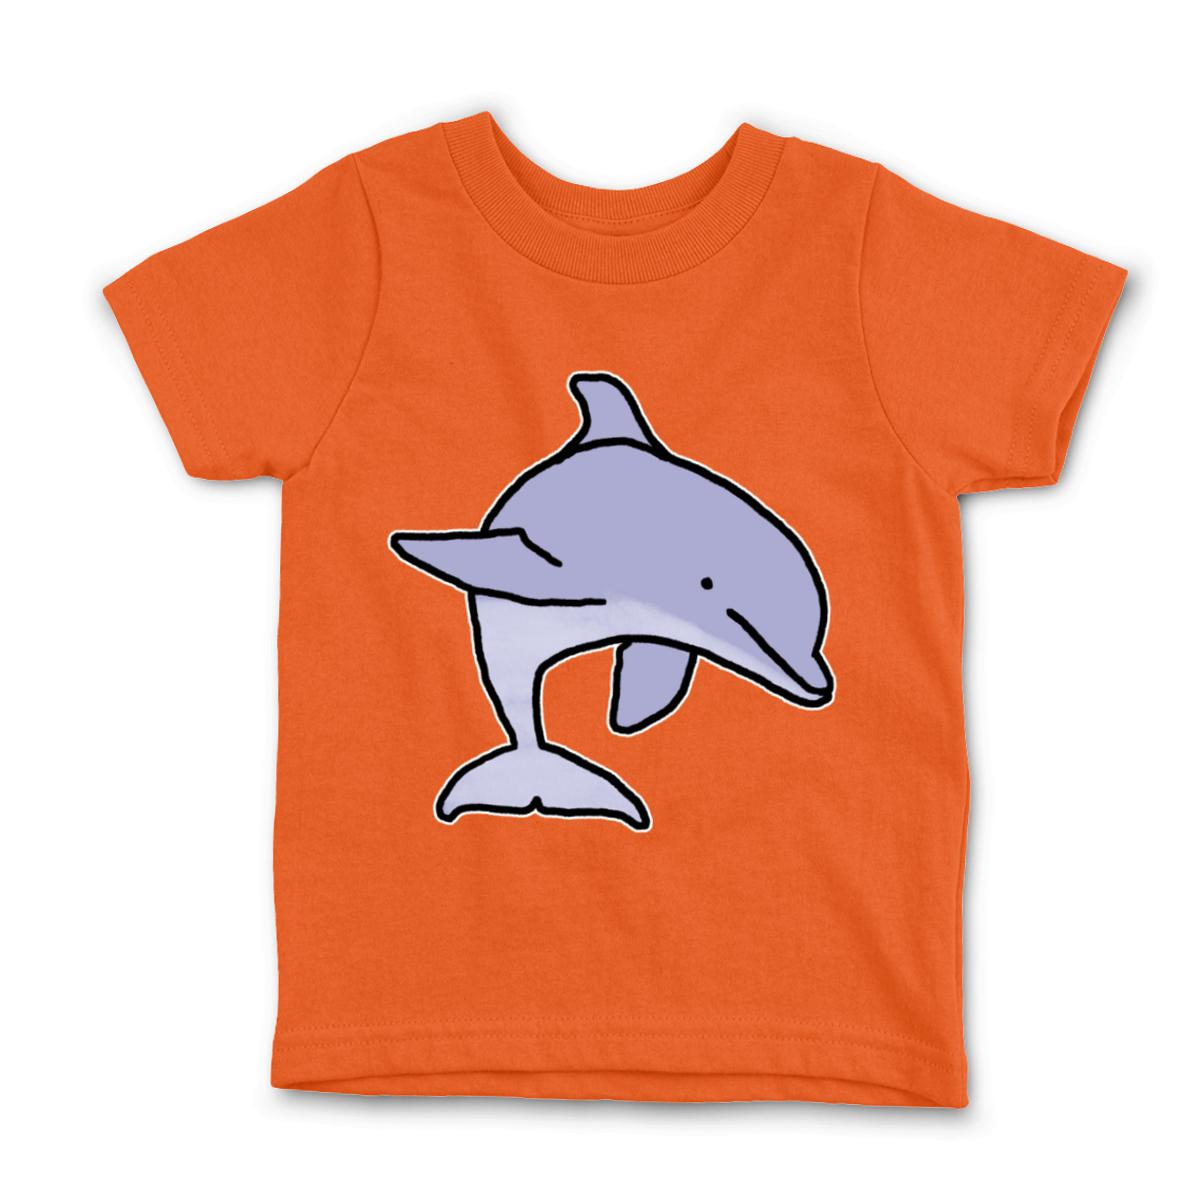 Dolphin Kid's Tee Small orange